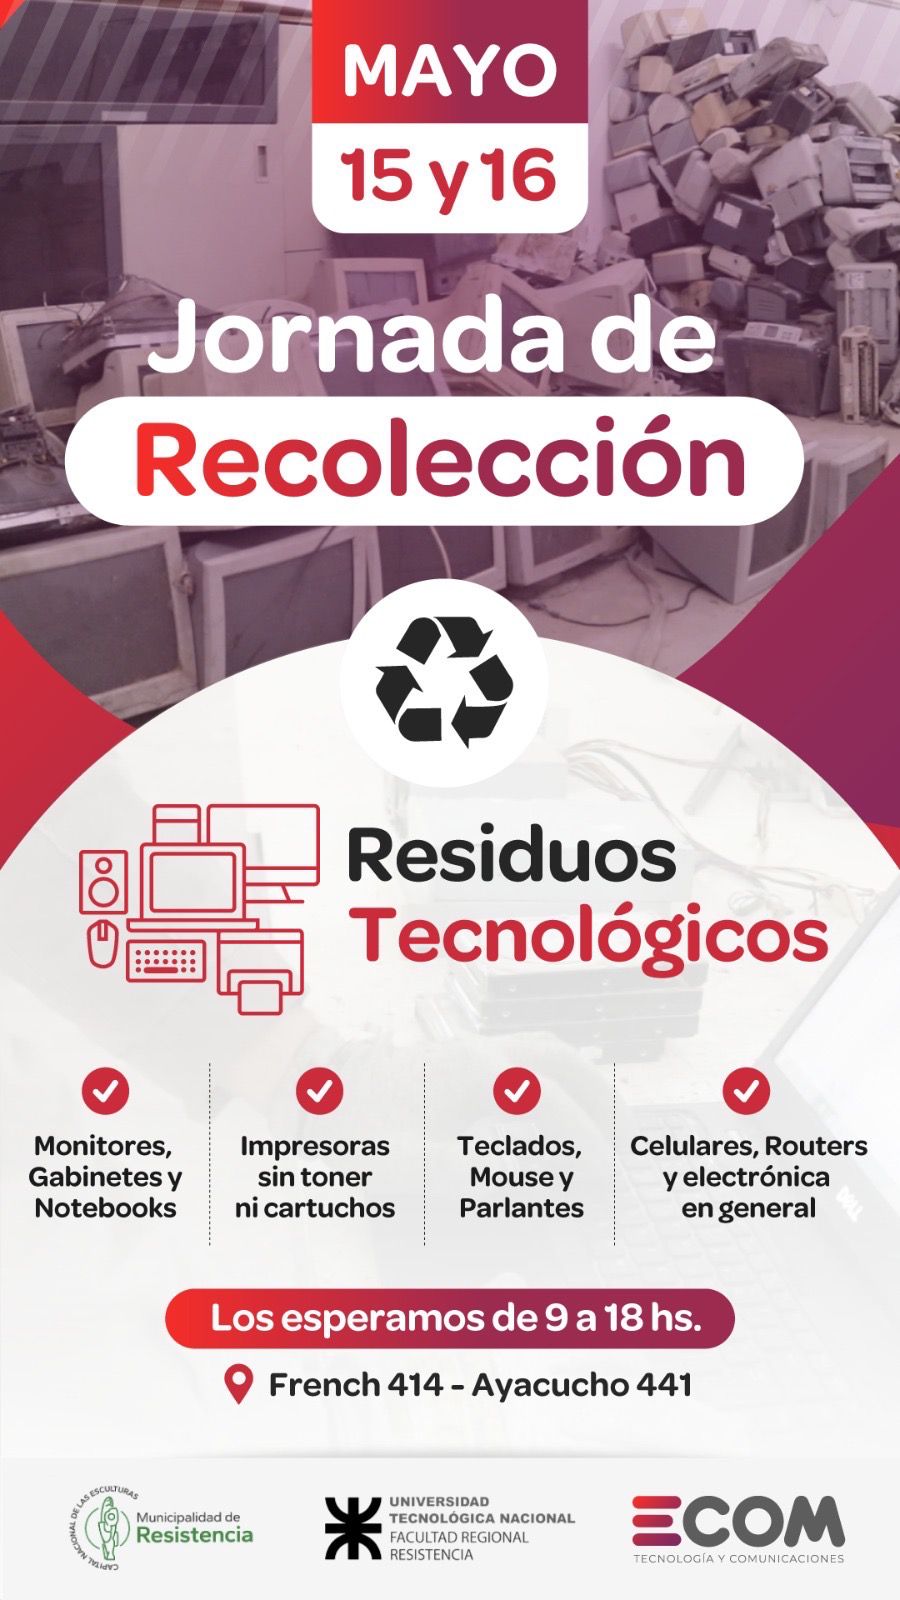 ECOM CHACO PROPONE NUEVA JORNADA DE RECOLECCIÓN DE RESIDUOS TECNOLÓGICOS